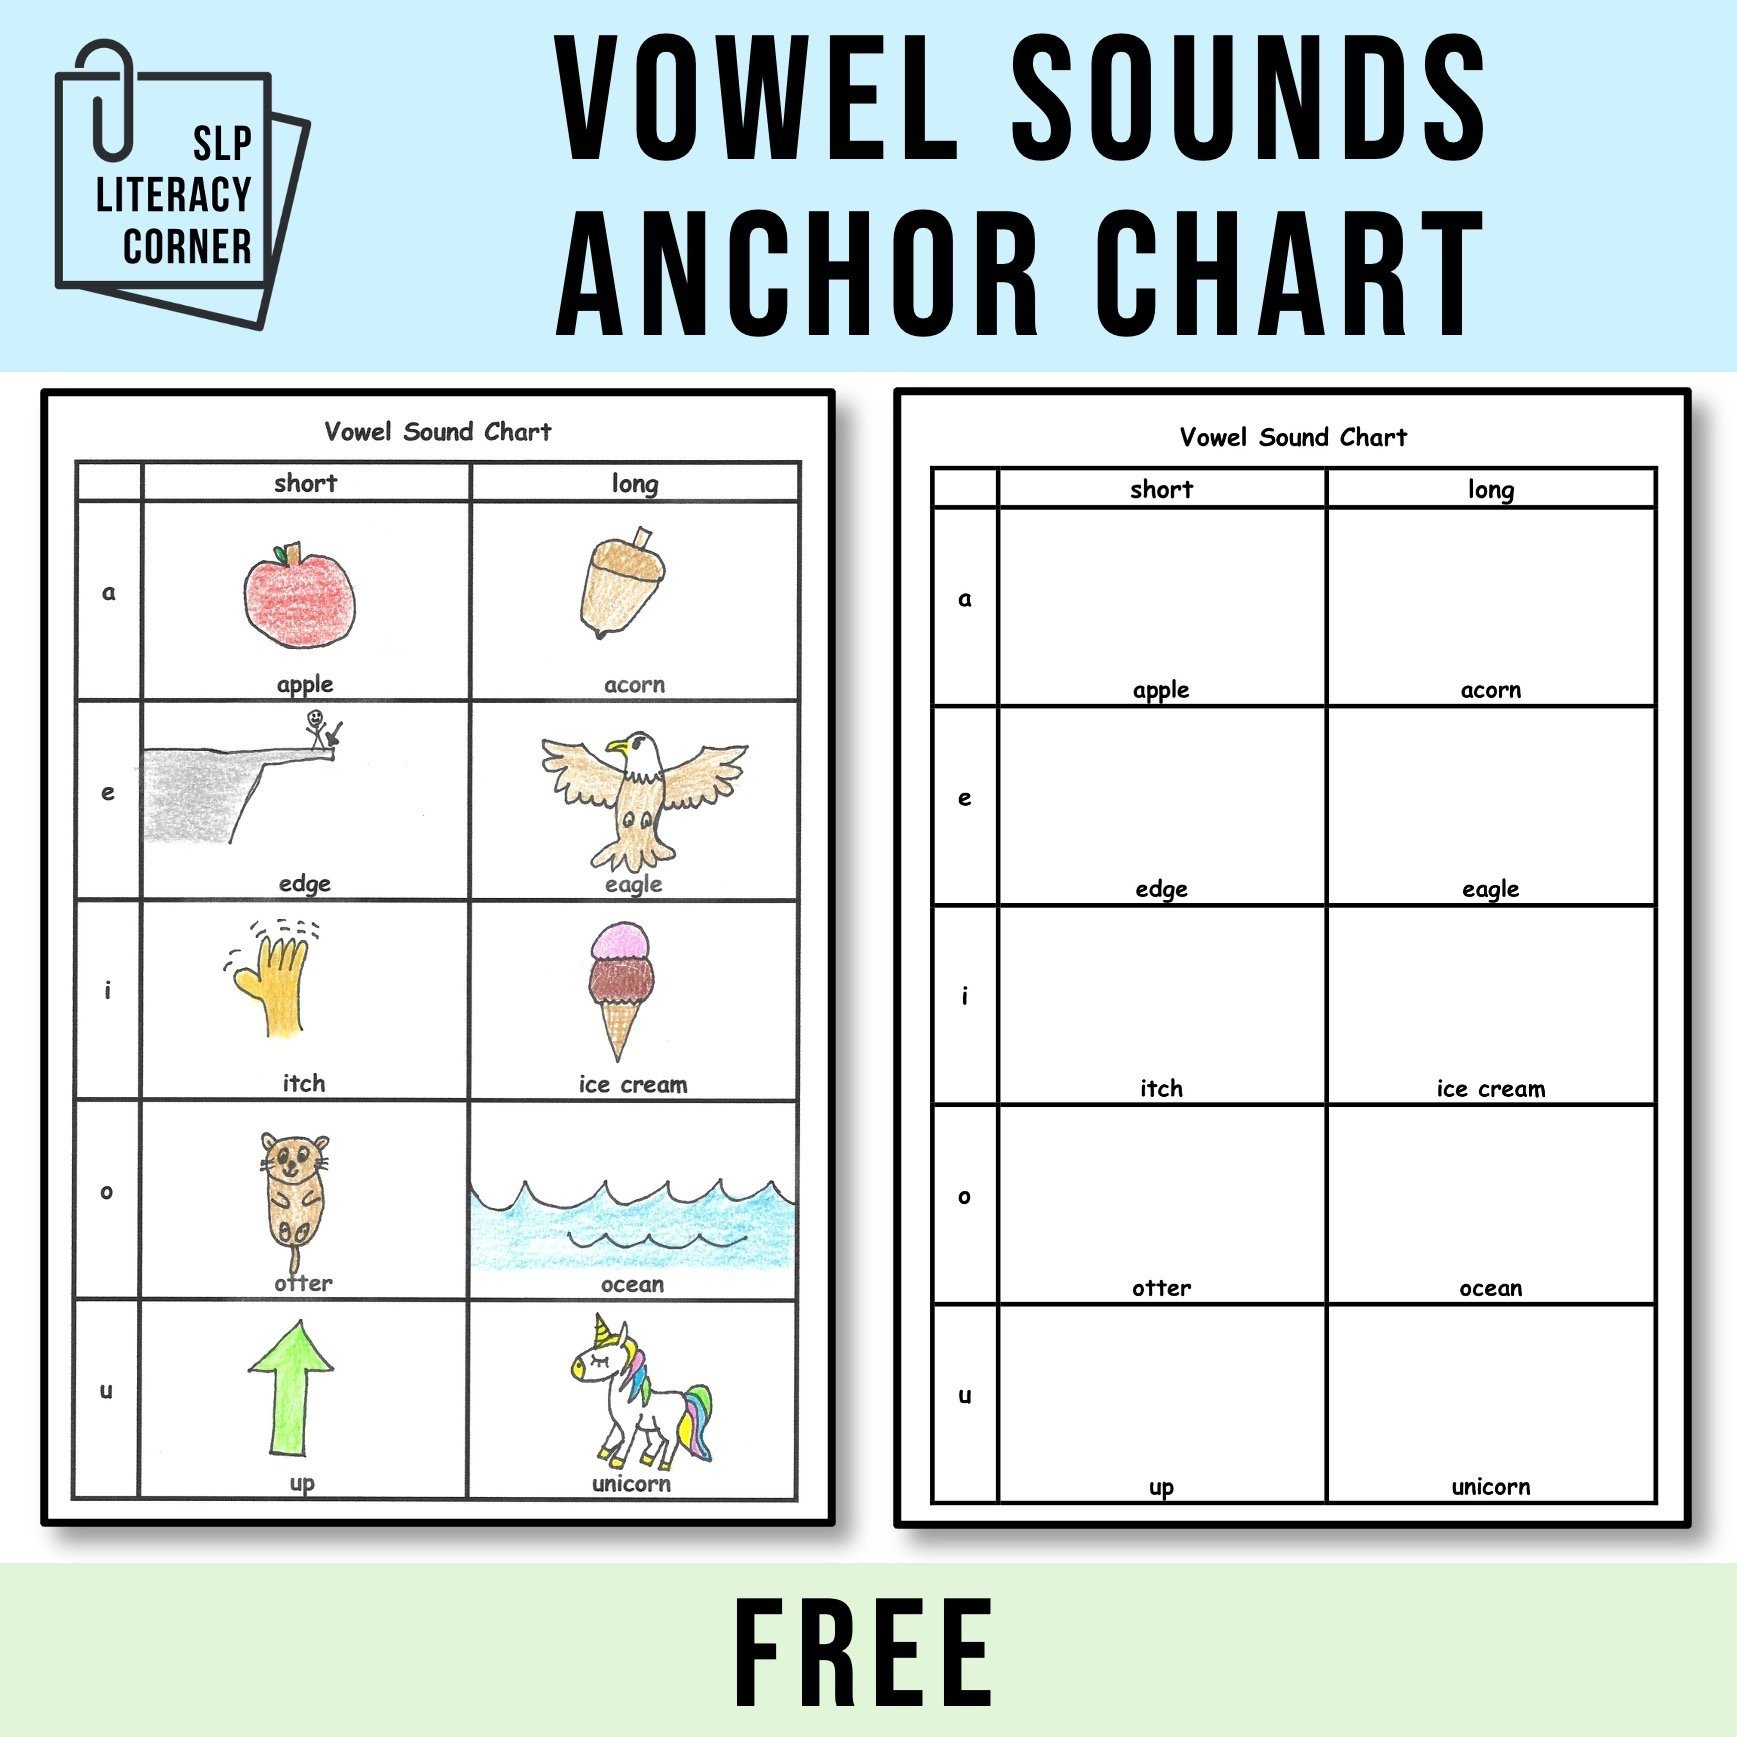 Vowel+Sounds+Anchor+Chart.jpg